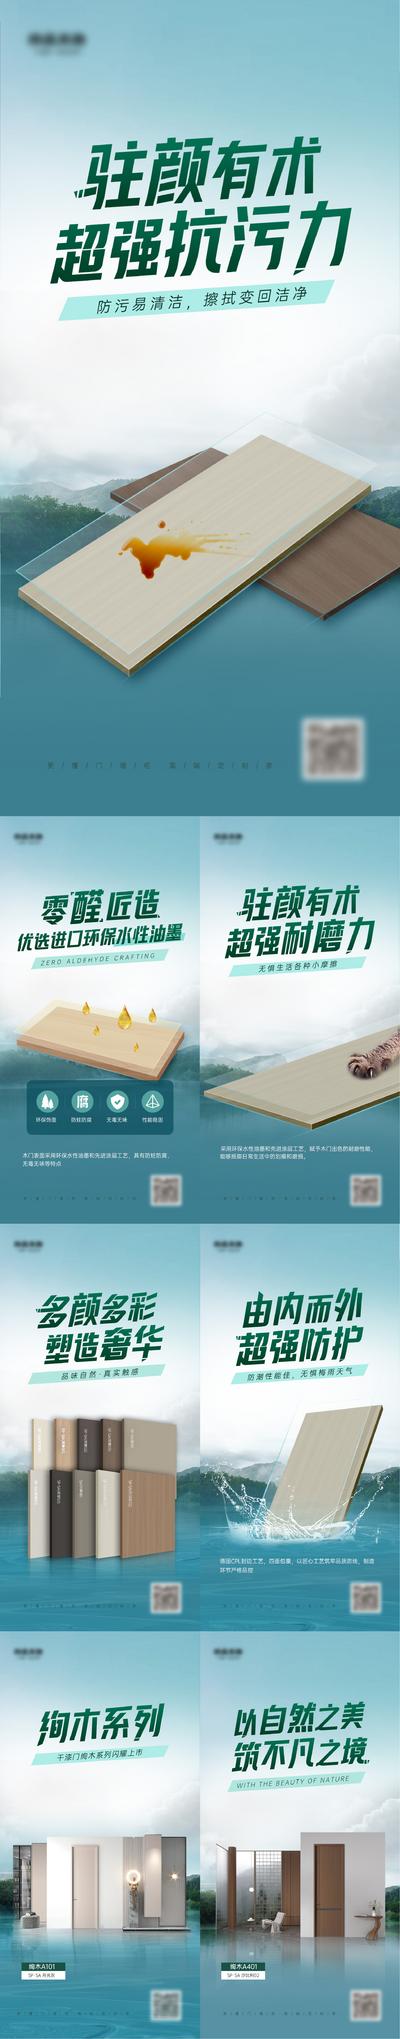 南门网 广告 海报 家具 地板 板材 家具 装修